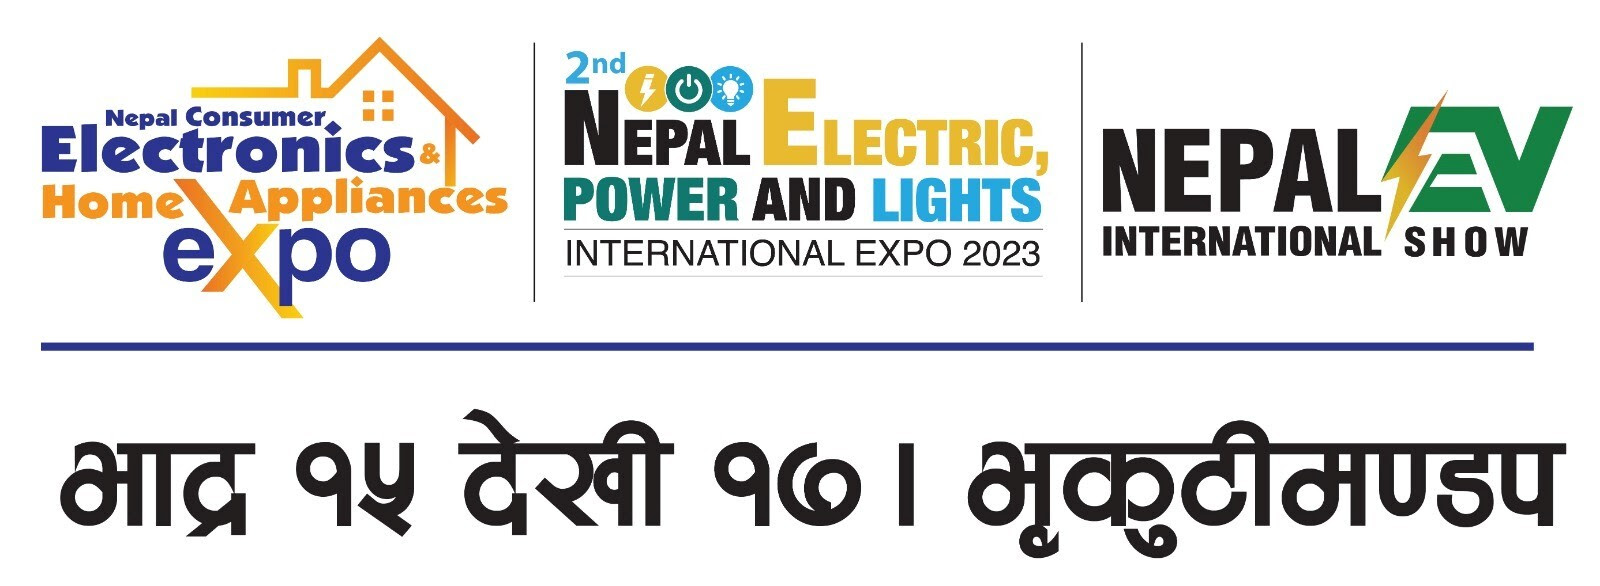 भृकुटीमण्डपमा ३ दिने नेपाल इलेक्ट्रिक तथा इलेक्ट्रोनिक्स अन्तर्राष्ट्रिय प्रदर्शनी हुँदै